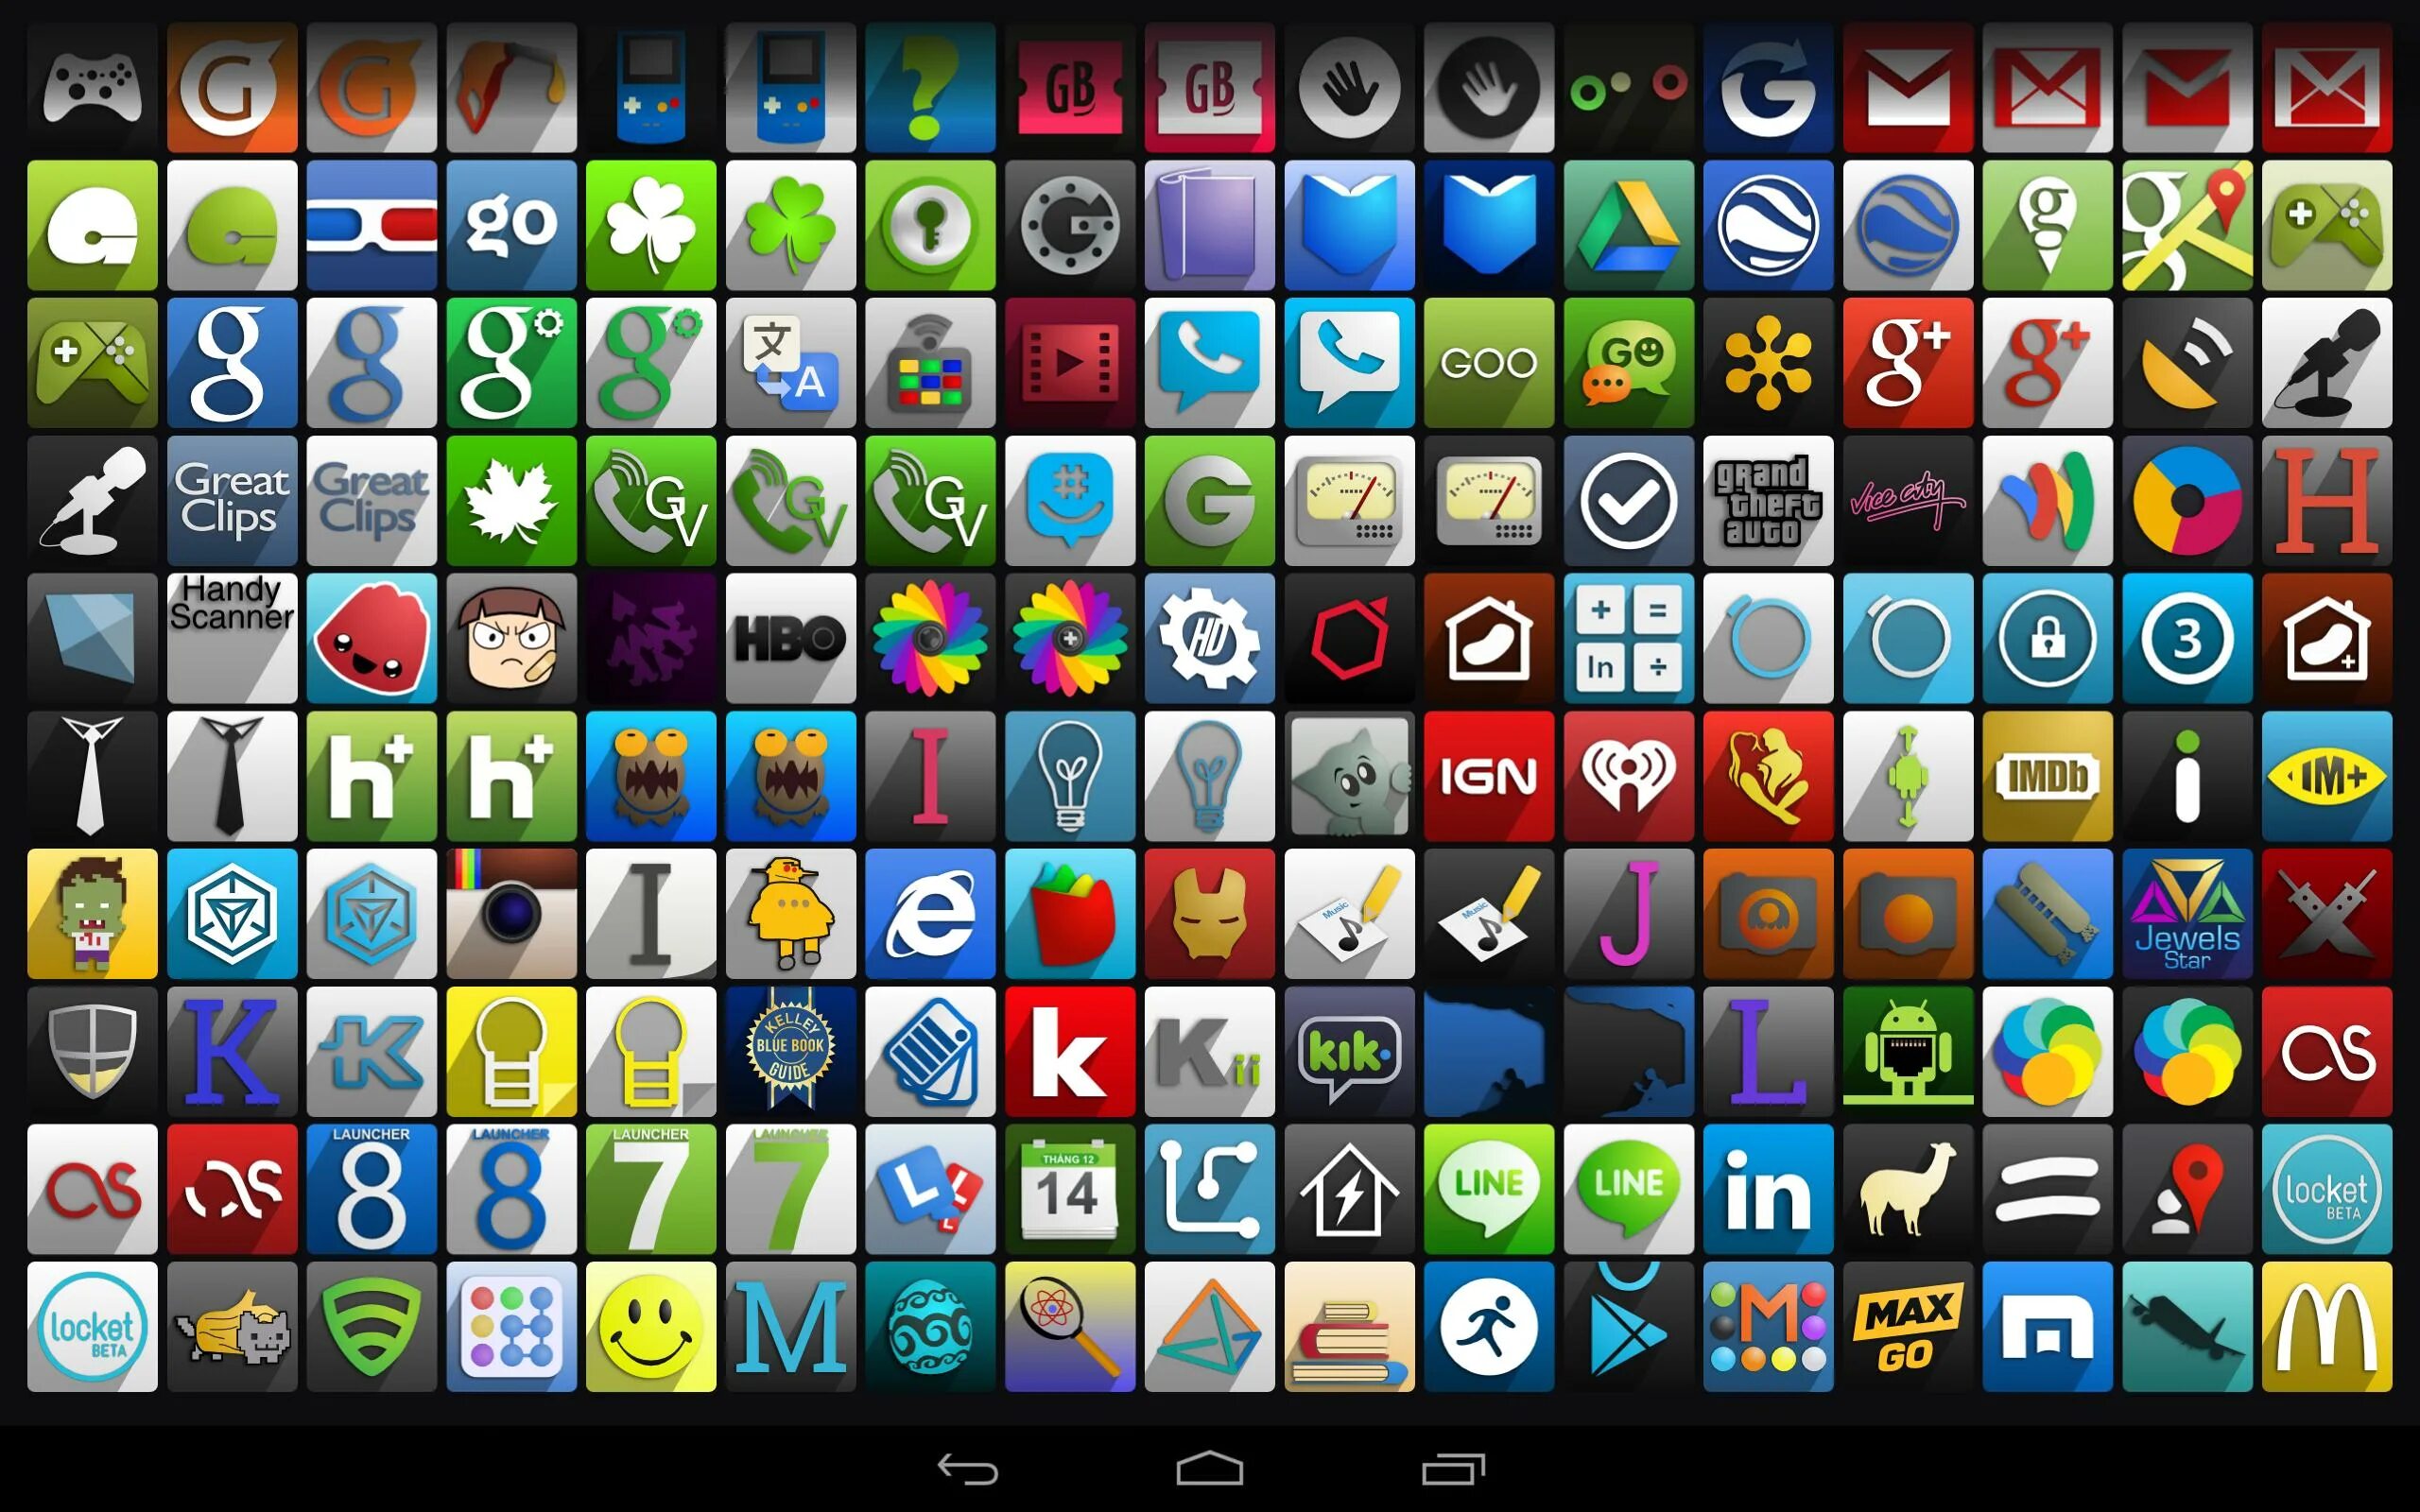 Иконки приложений для андроид. Красивые иконки для приложений. Значки приложений на андроиде. Иконки для приложений Android. Показать иконки приложений